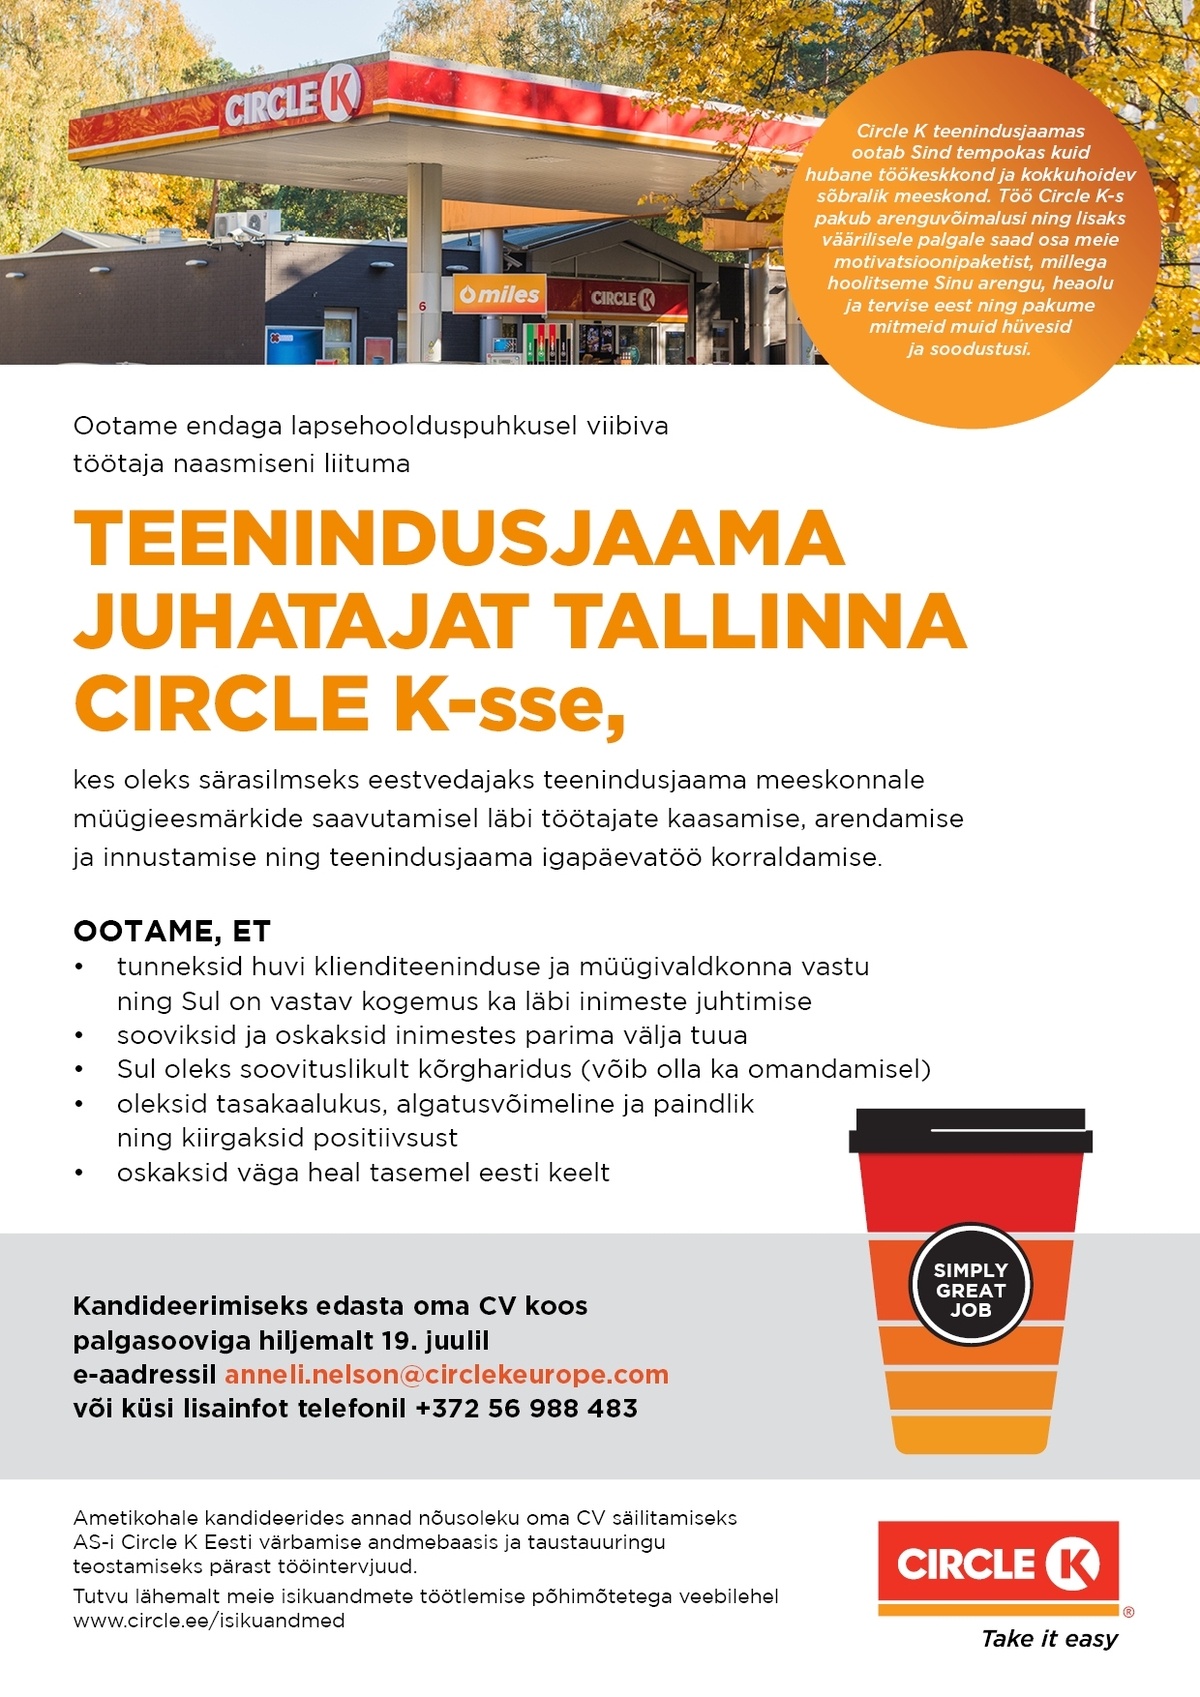 Circle K Eesti AS Juhataja Tallinna teenindusjaama